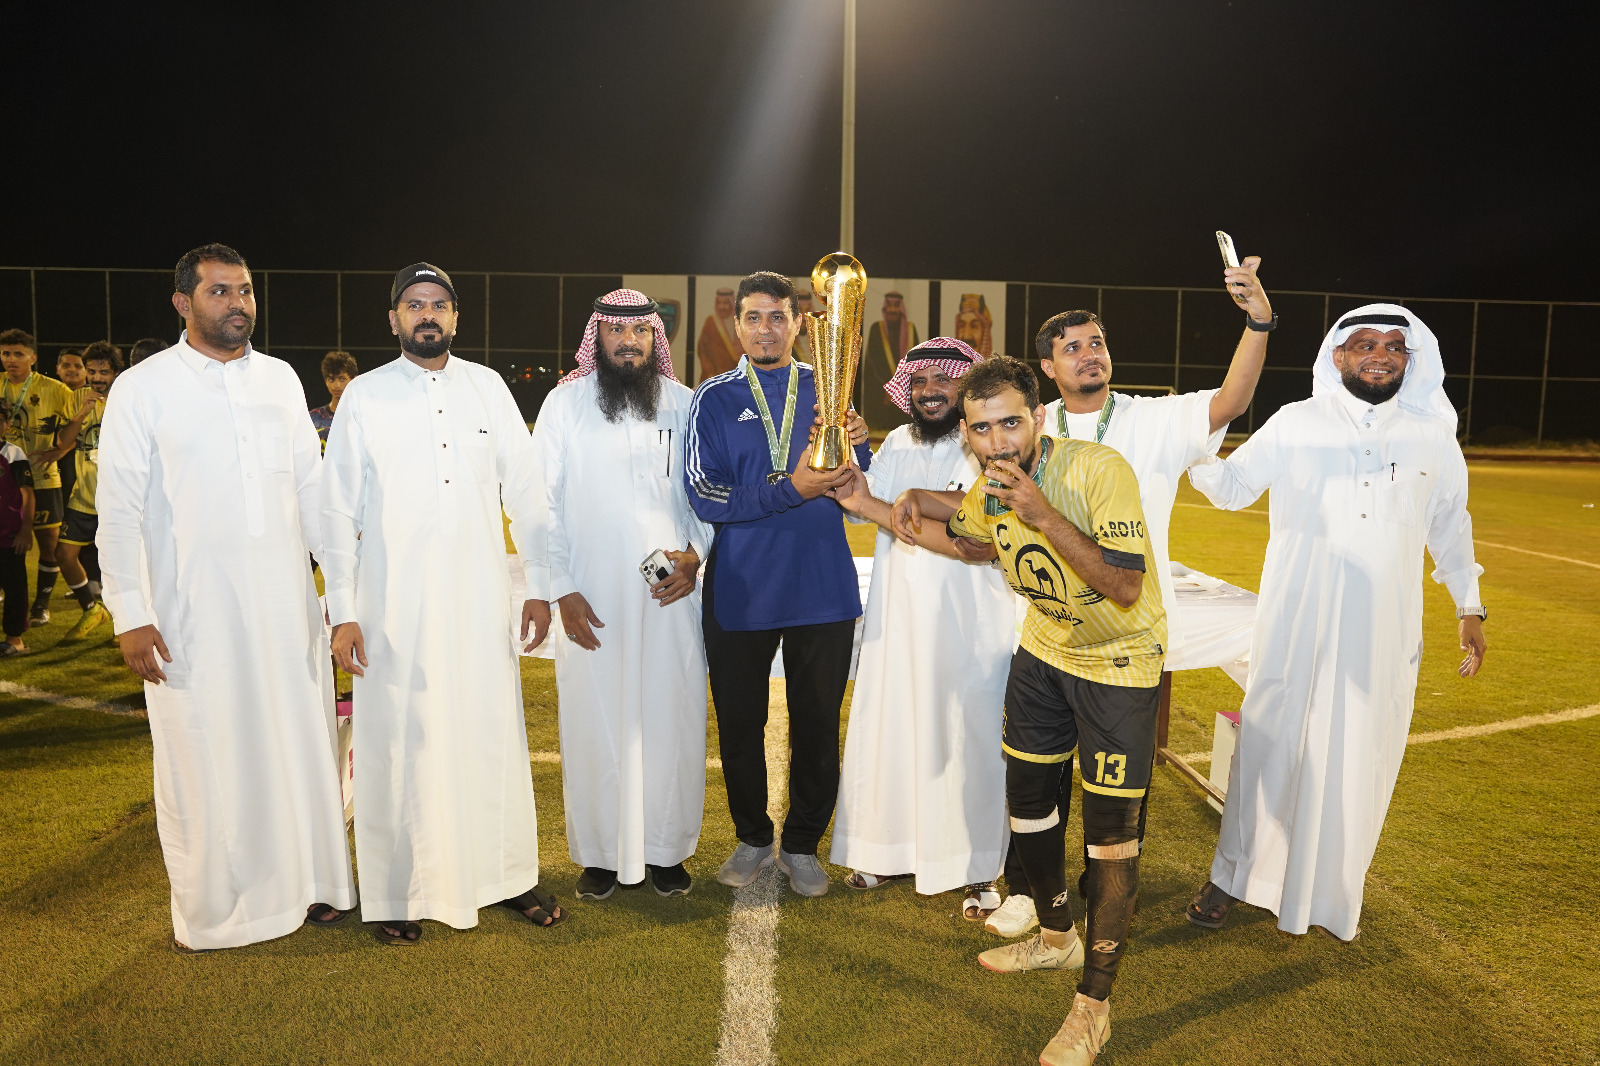 فريق” مليل بطلًا لكأس سوبر رابطة الهواة لكرة القدم بمنطقة الباحة